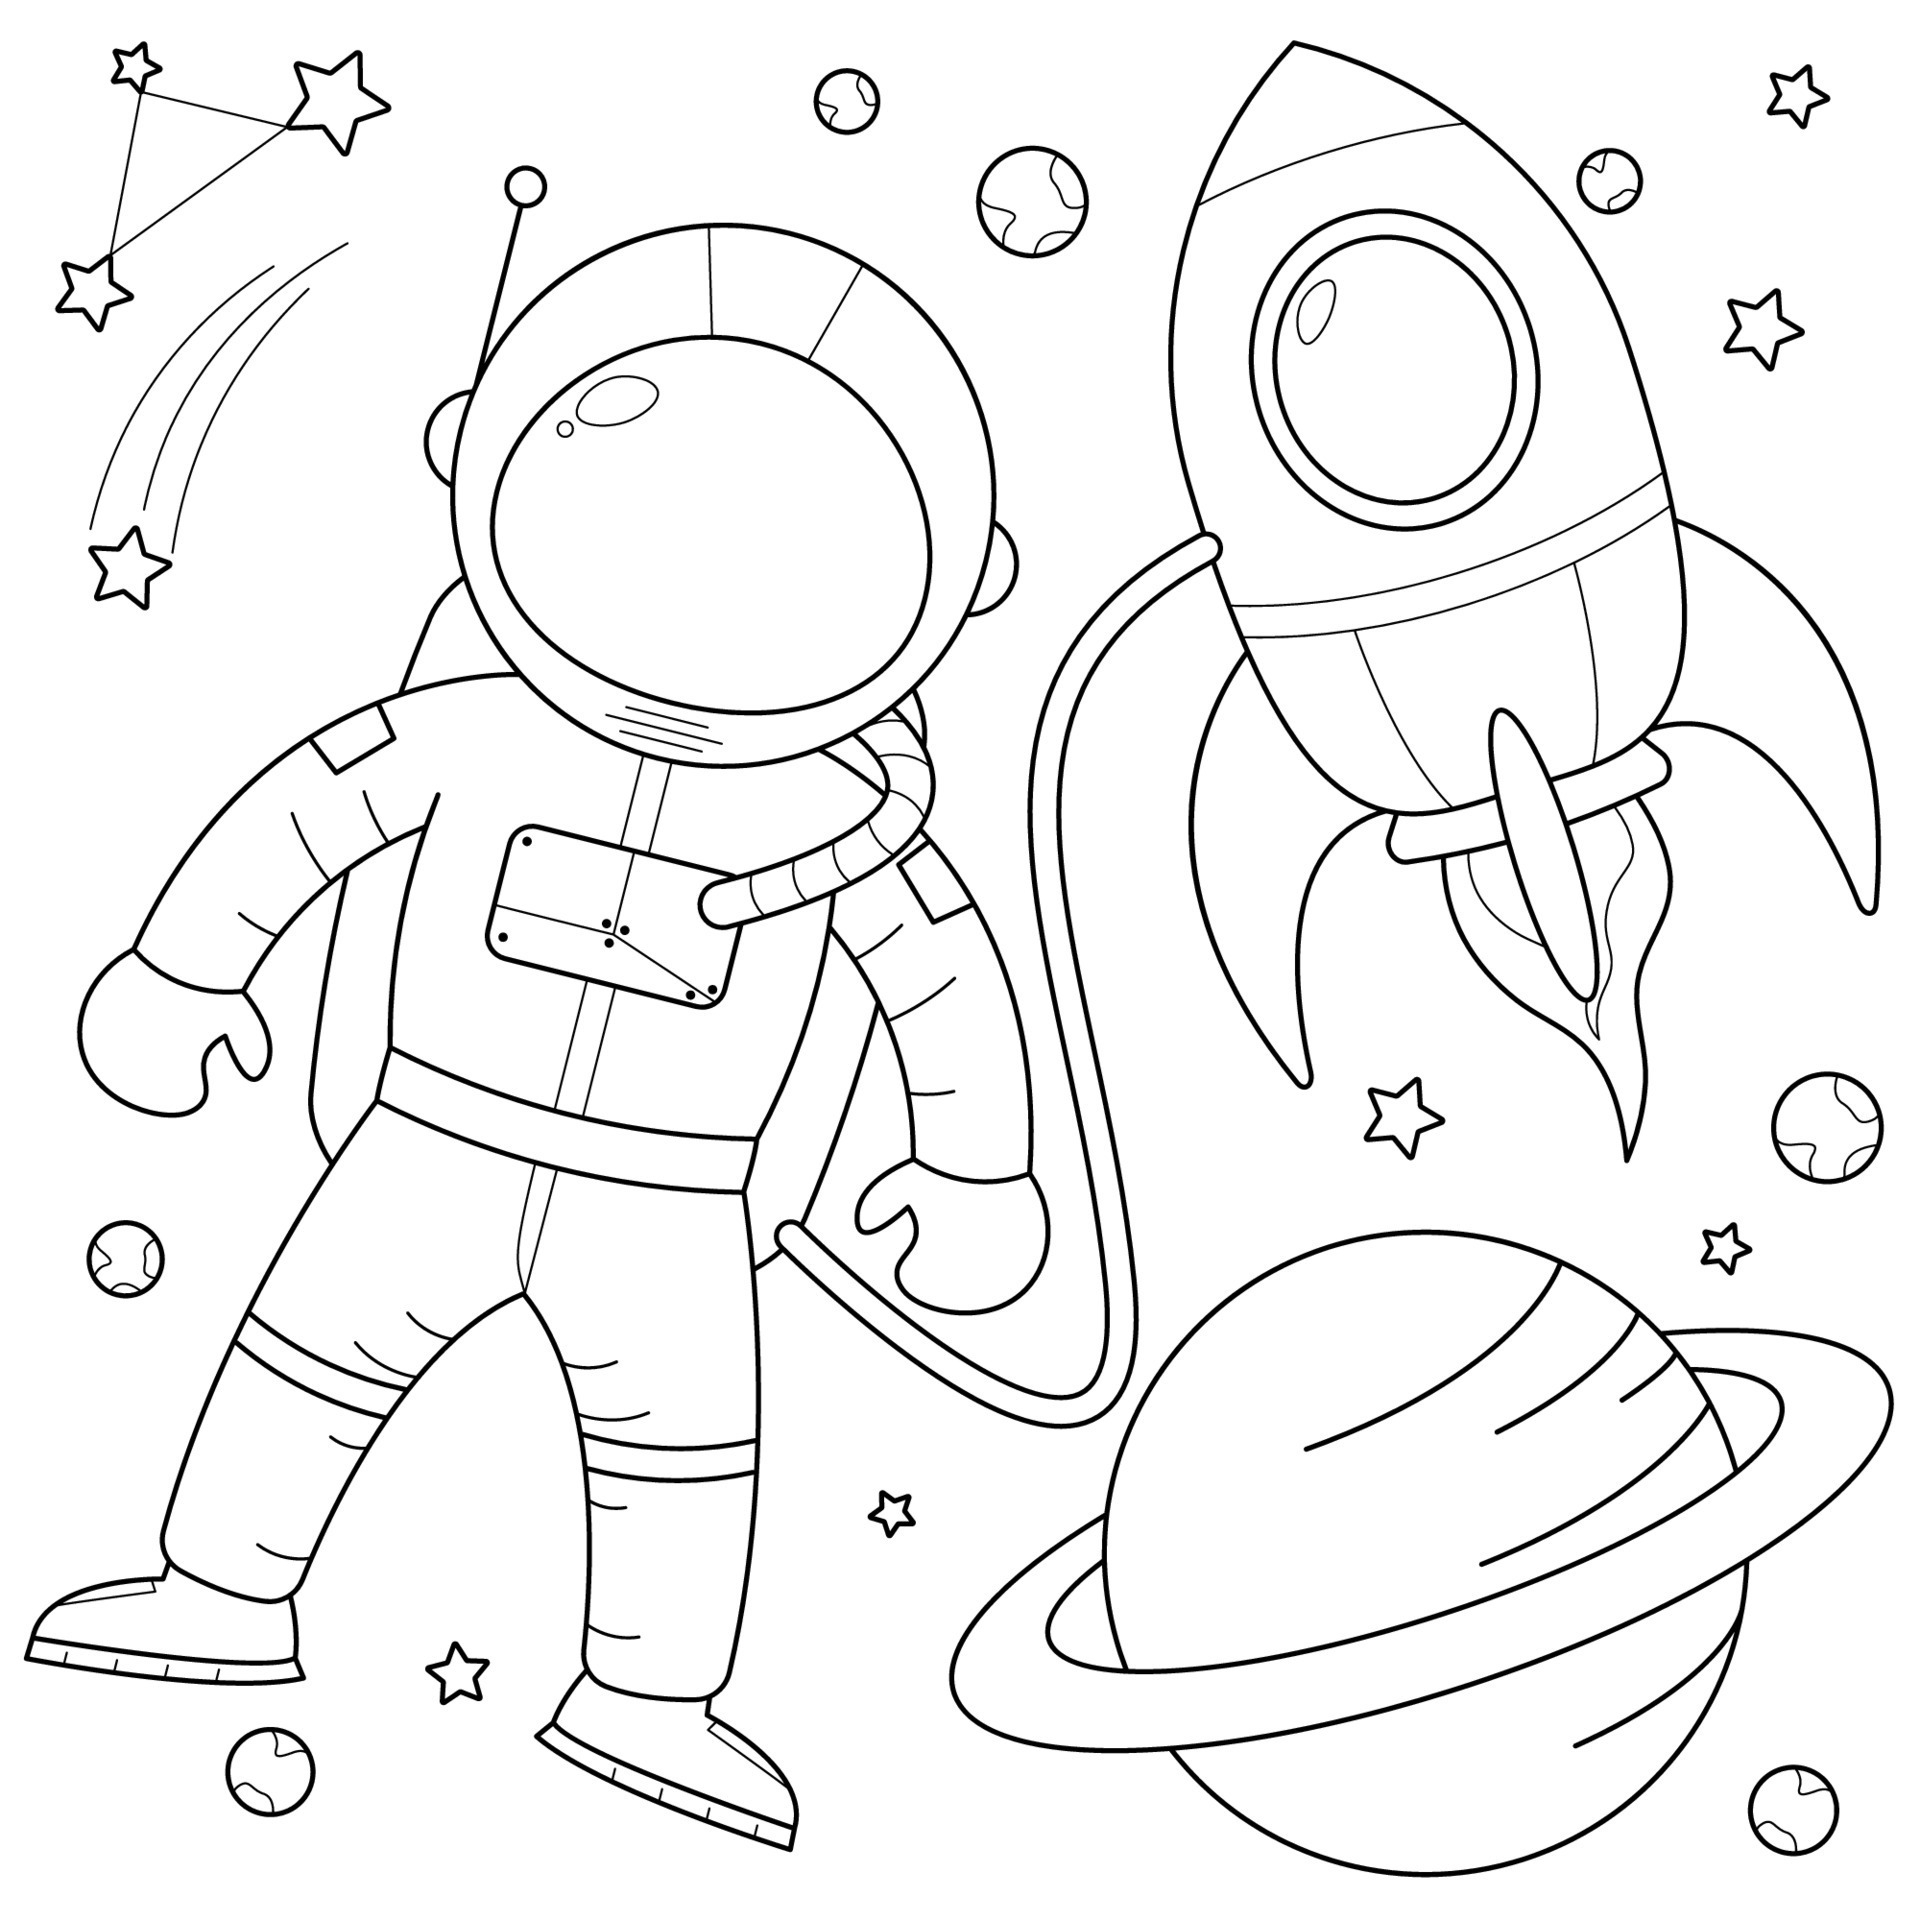 Нарисовать космонавта карандашом. Раскраска. В космосе. Космонавт раскраска для детей. Раскраска космонавт в космосе. Ракета и космонавт рисунок раскраска.